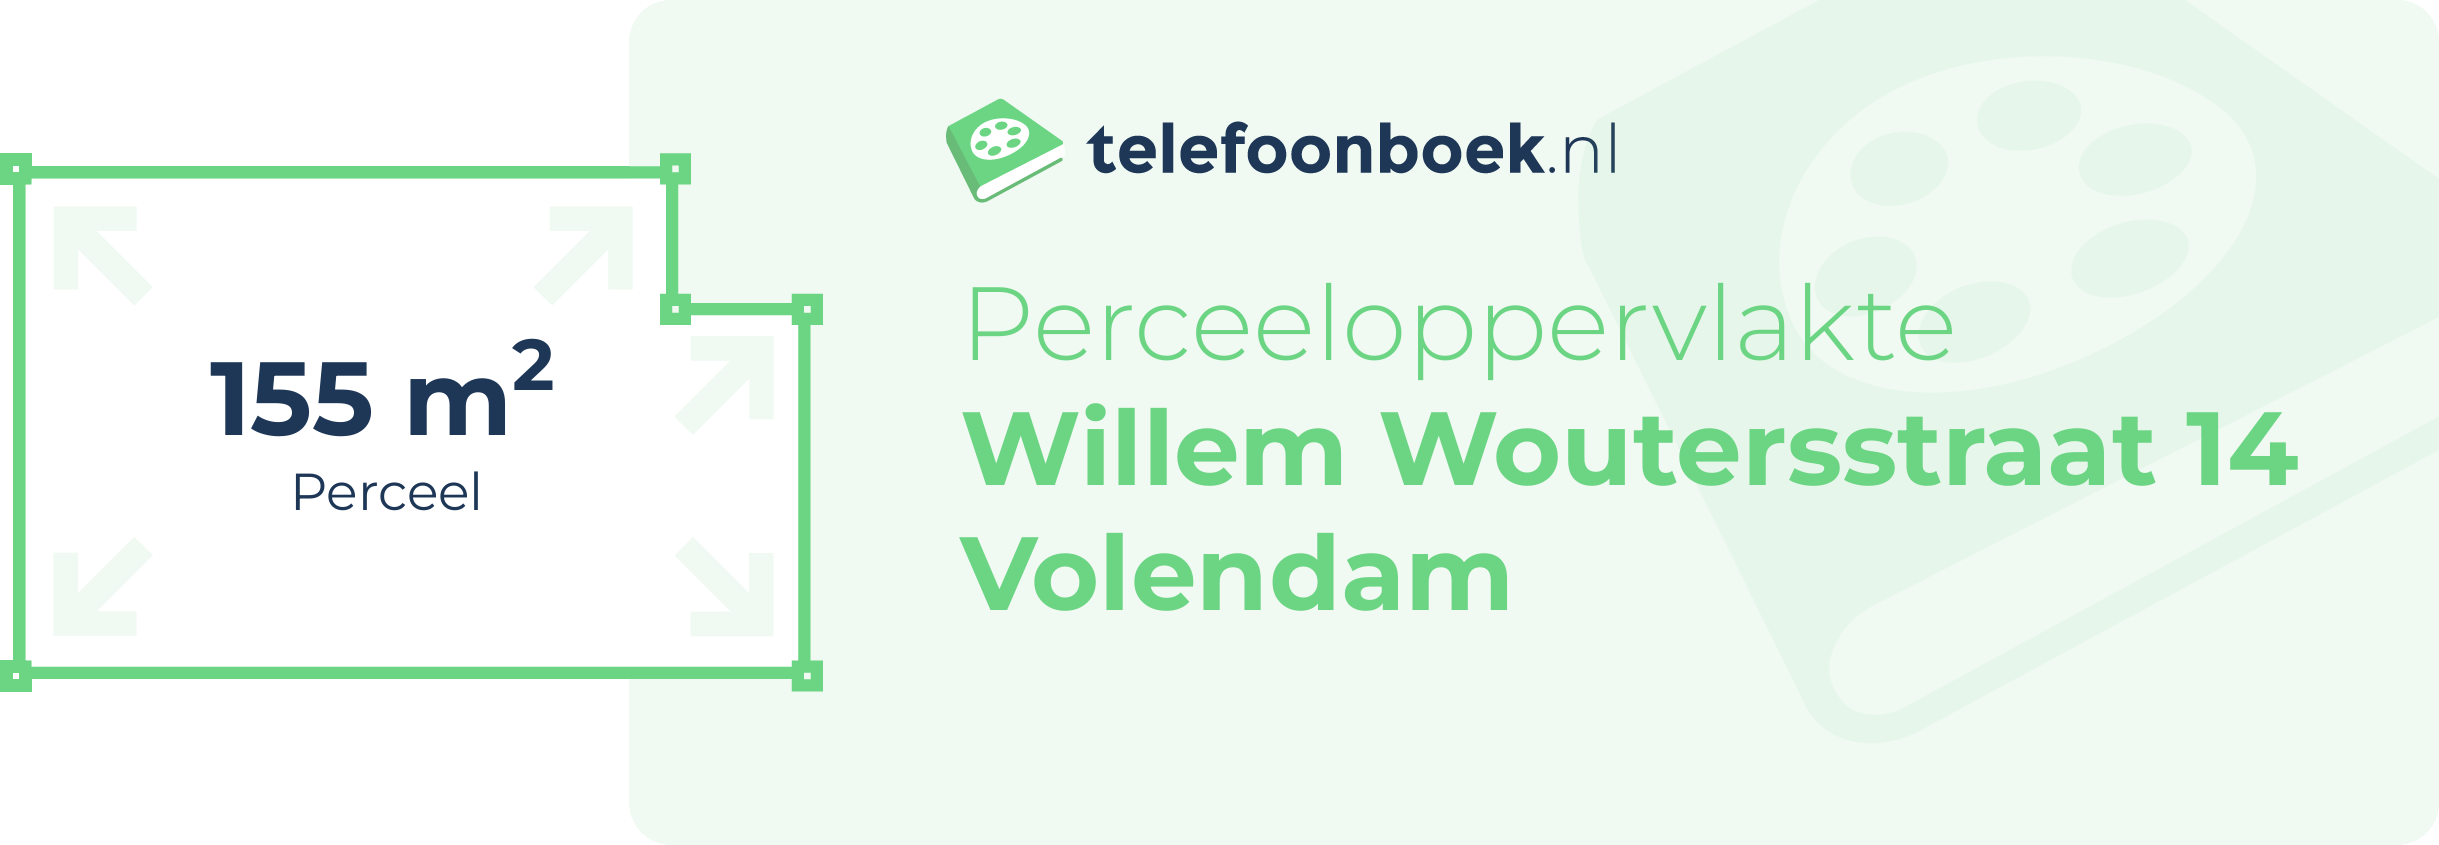 Perceeloppervlakte Willem Woutersstraat 14 Volendam